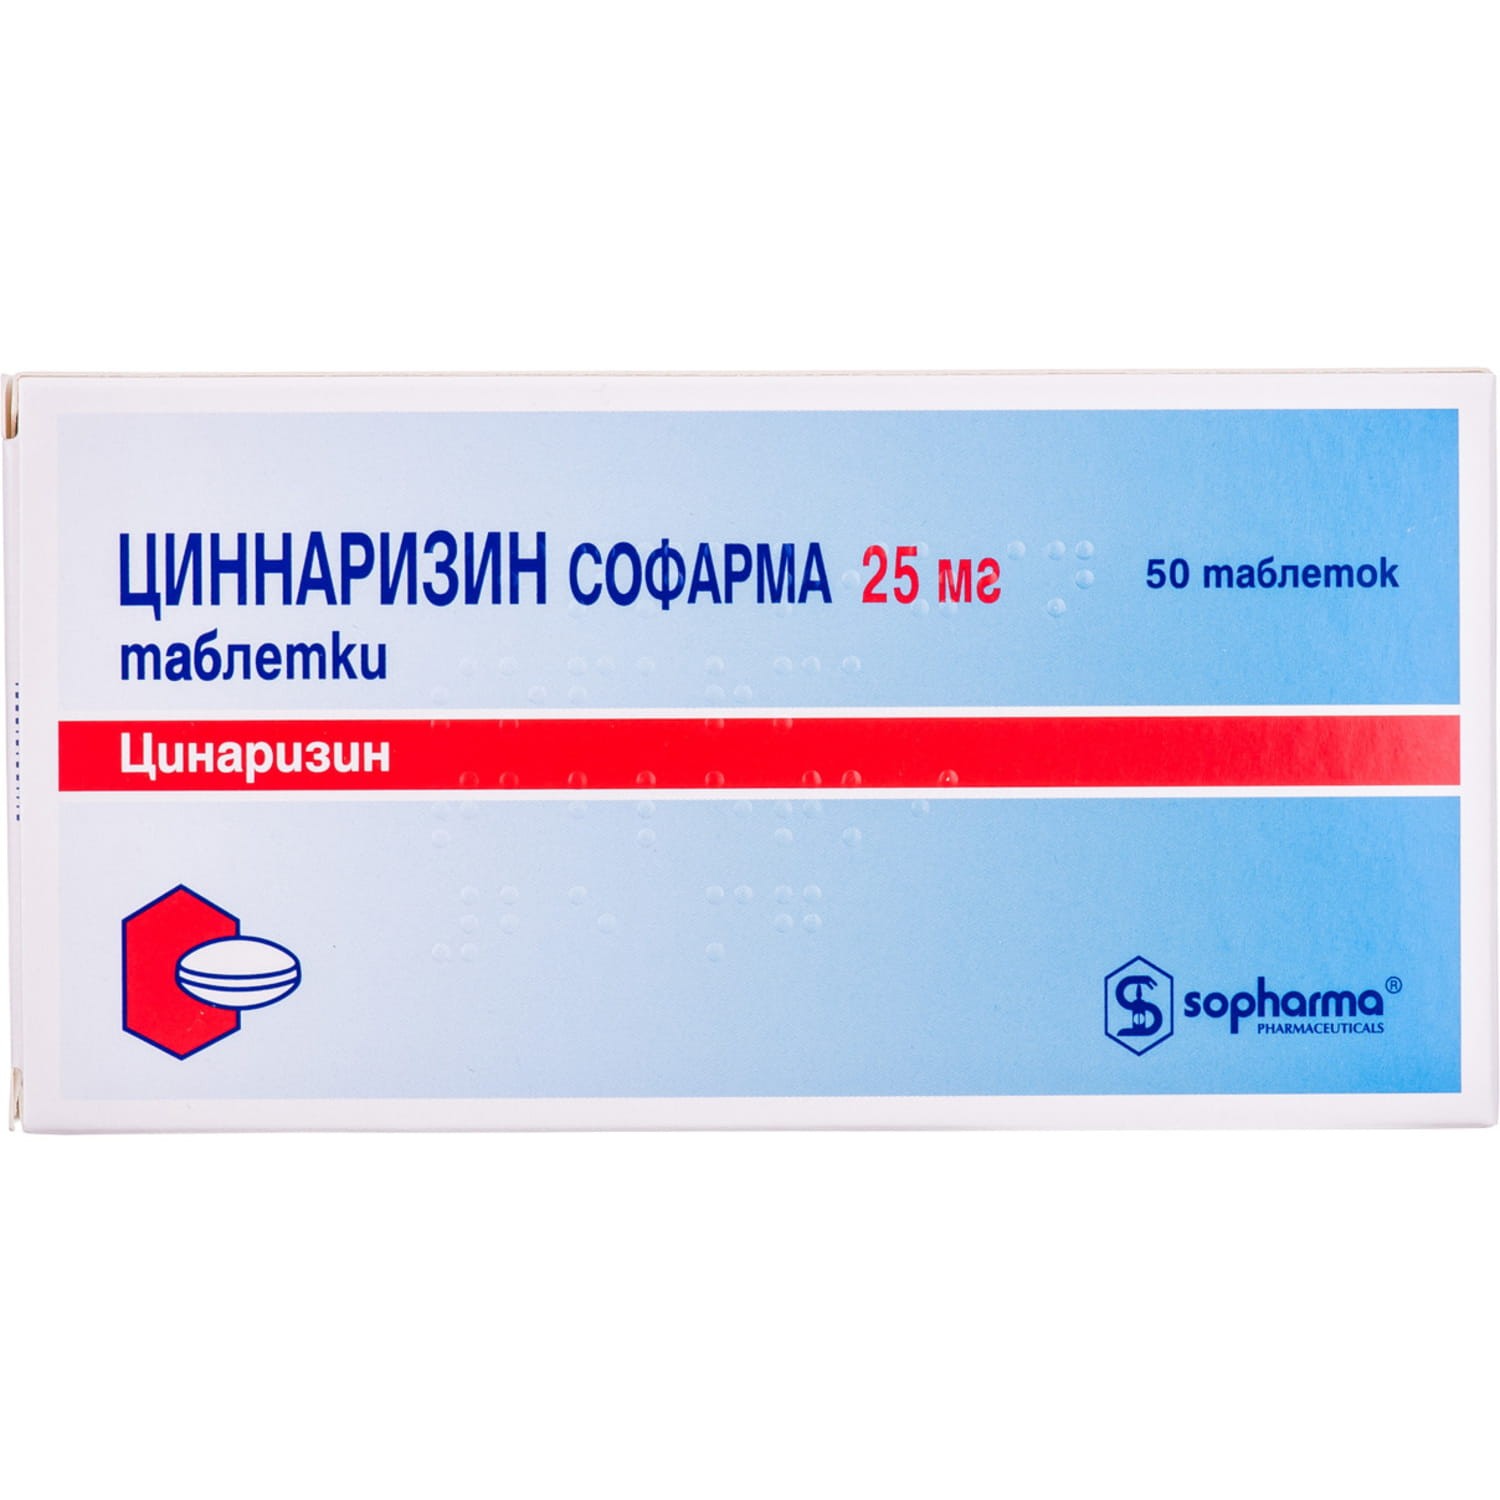 Sopharma Витамин С 2 мл 10 ампули | Софарма - Изгодни цени и доставка в ...